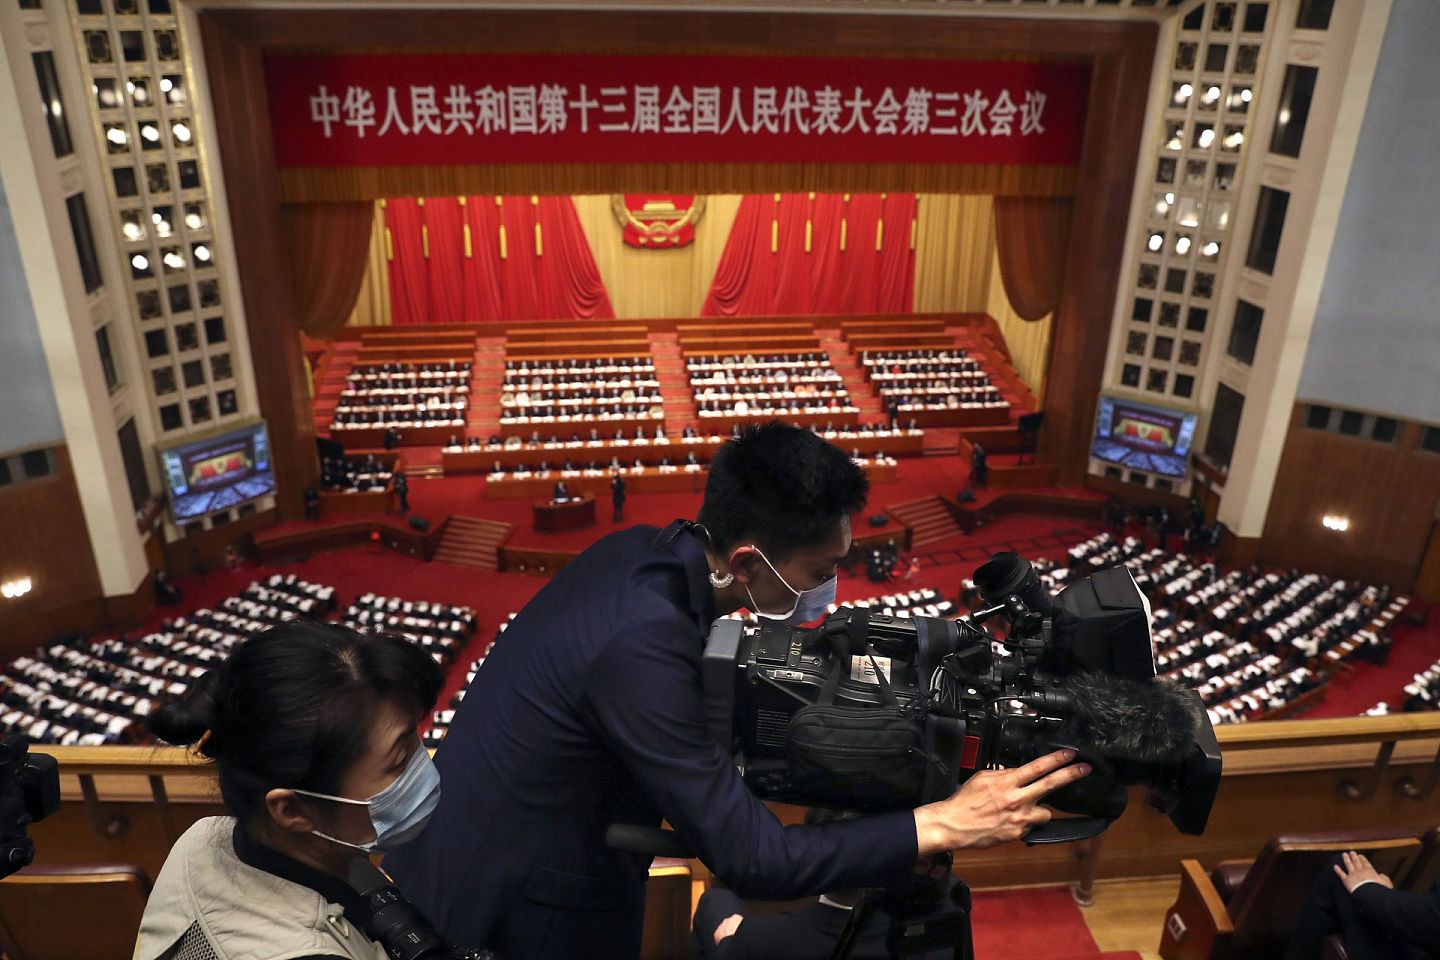 2020年5月22日，中国全国人民代表大会开幕式在北京人民大会堂举行。大会将持续一周左右，一个重要的议程就是审议“港版国安法”。 (AP )